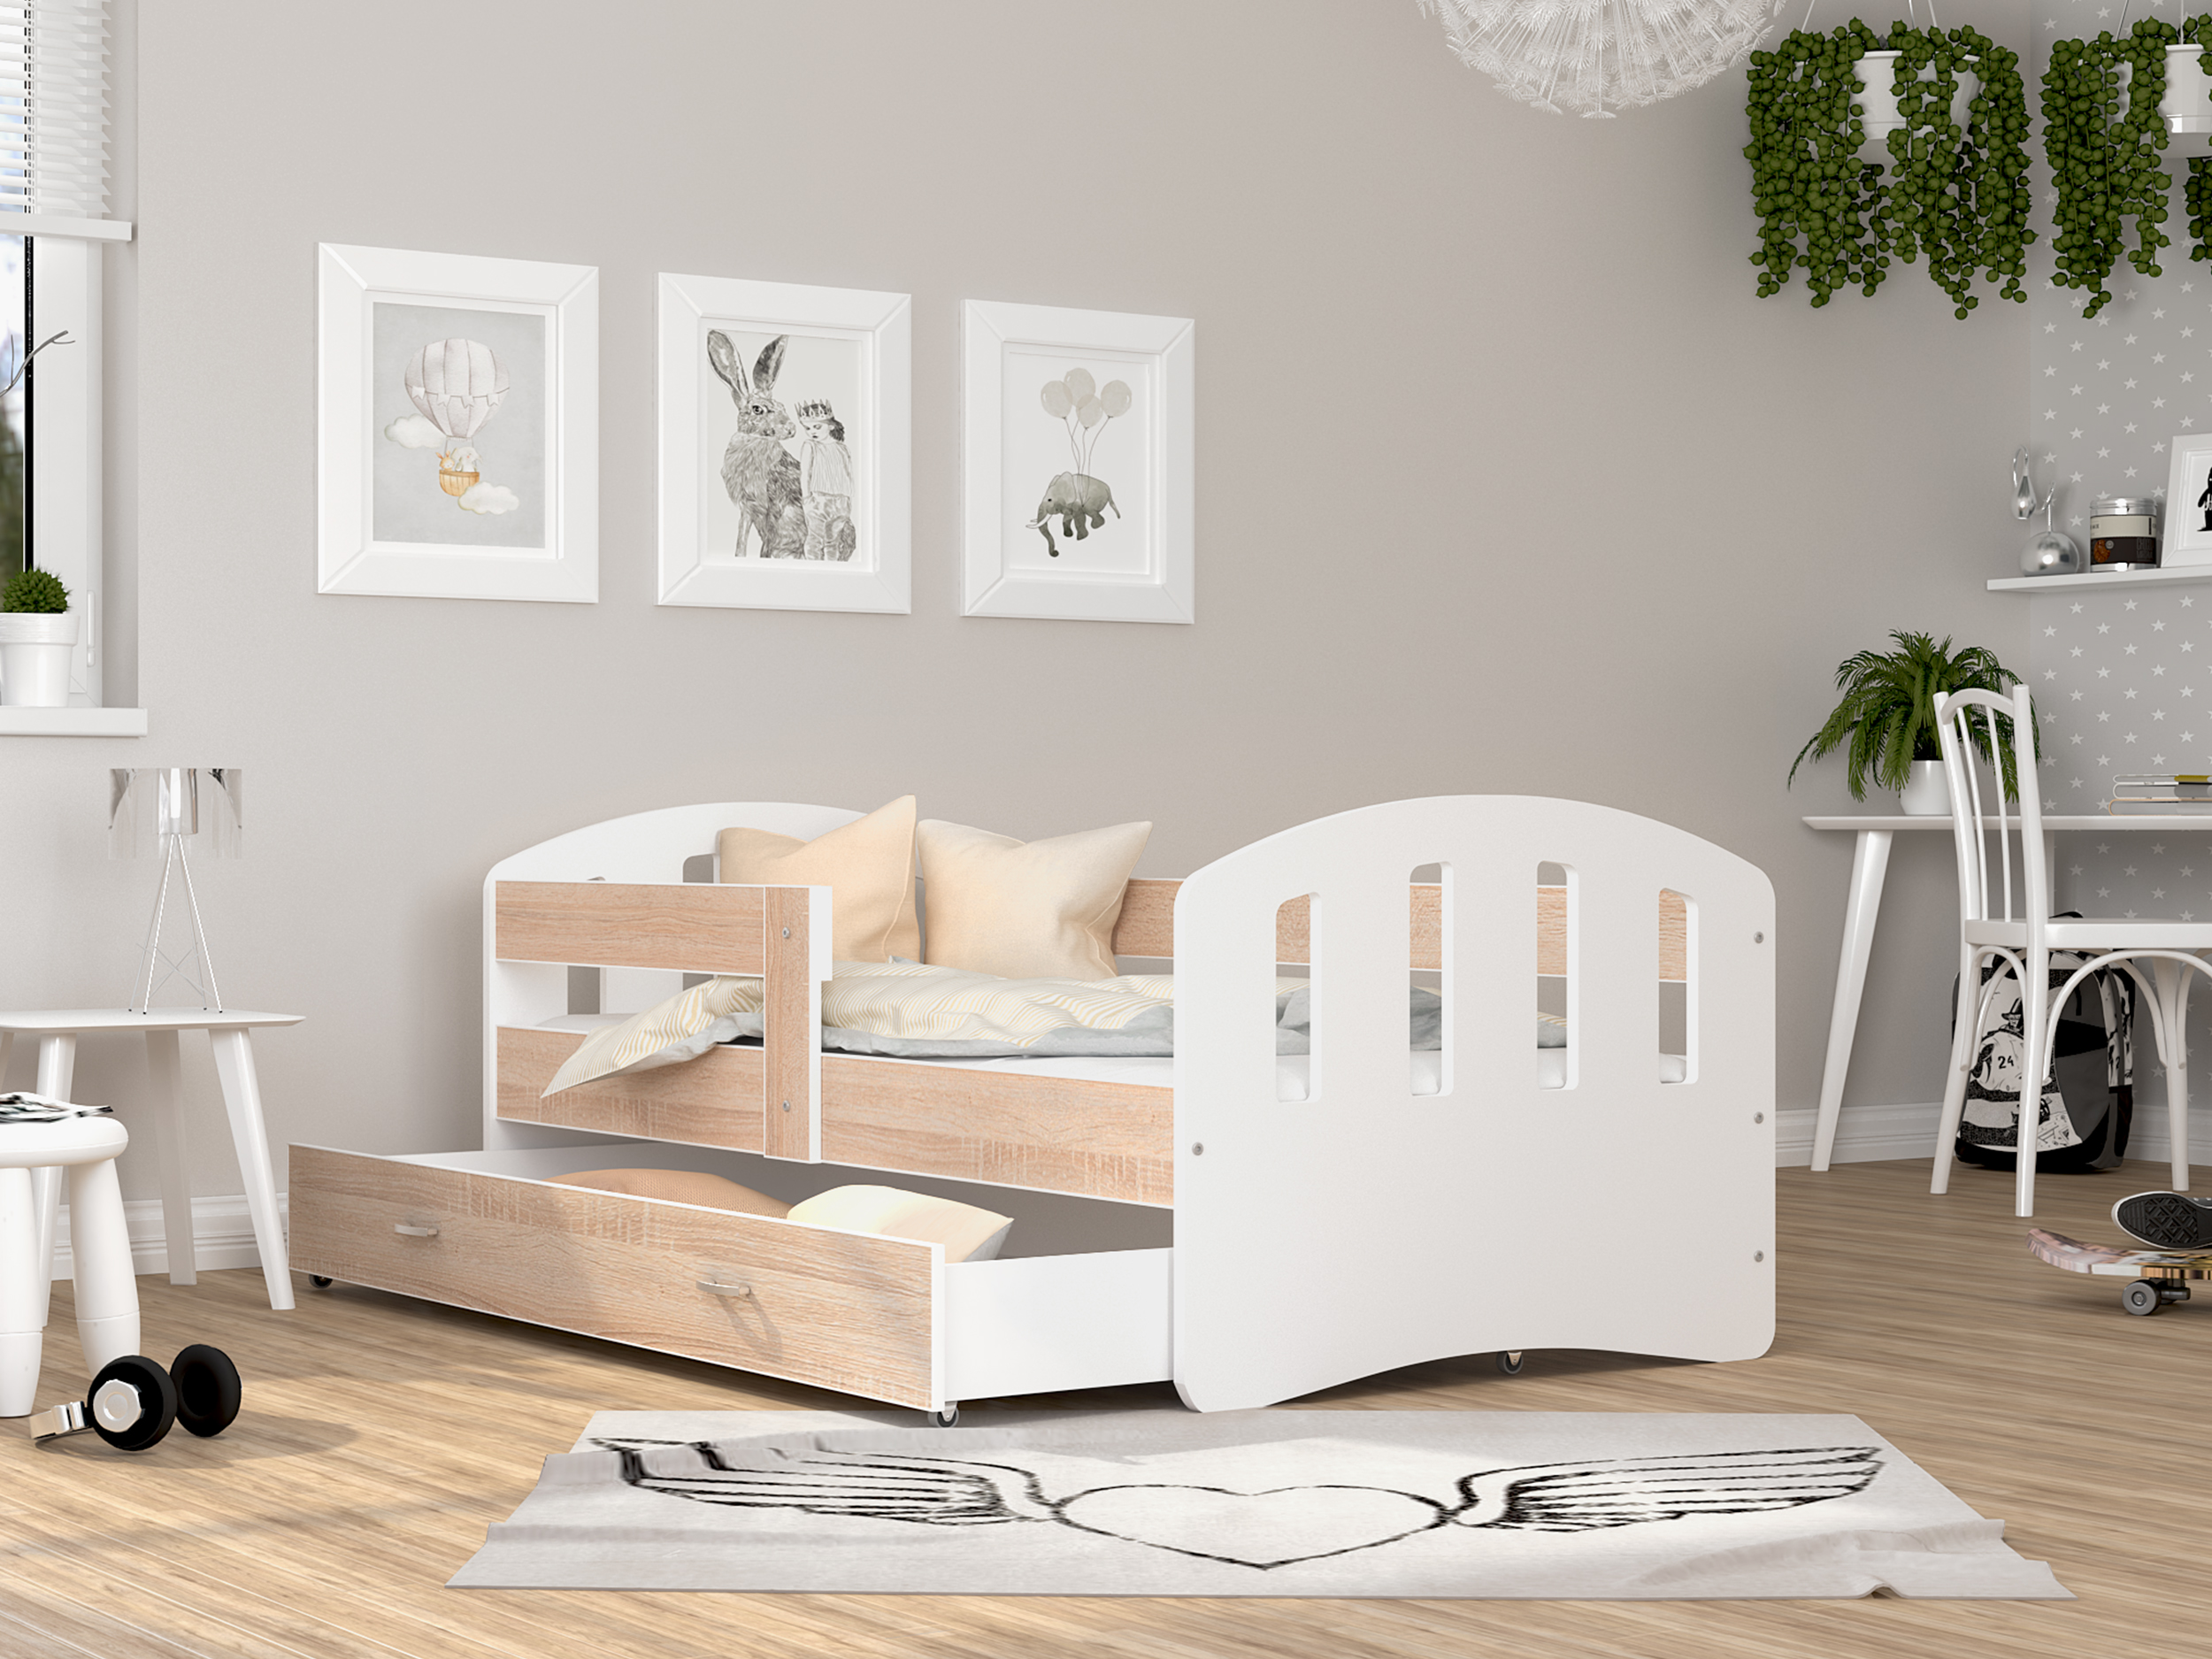 Postel pro děti s šuplíkem a se zábranama | Bezpečná dětská postel | Dětská postel | Postel se šuplíkem | Postel se zábranama